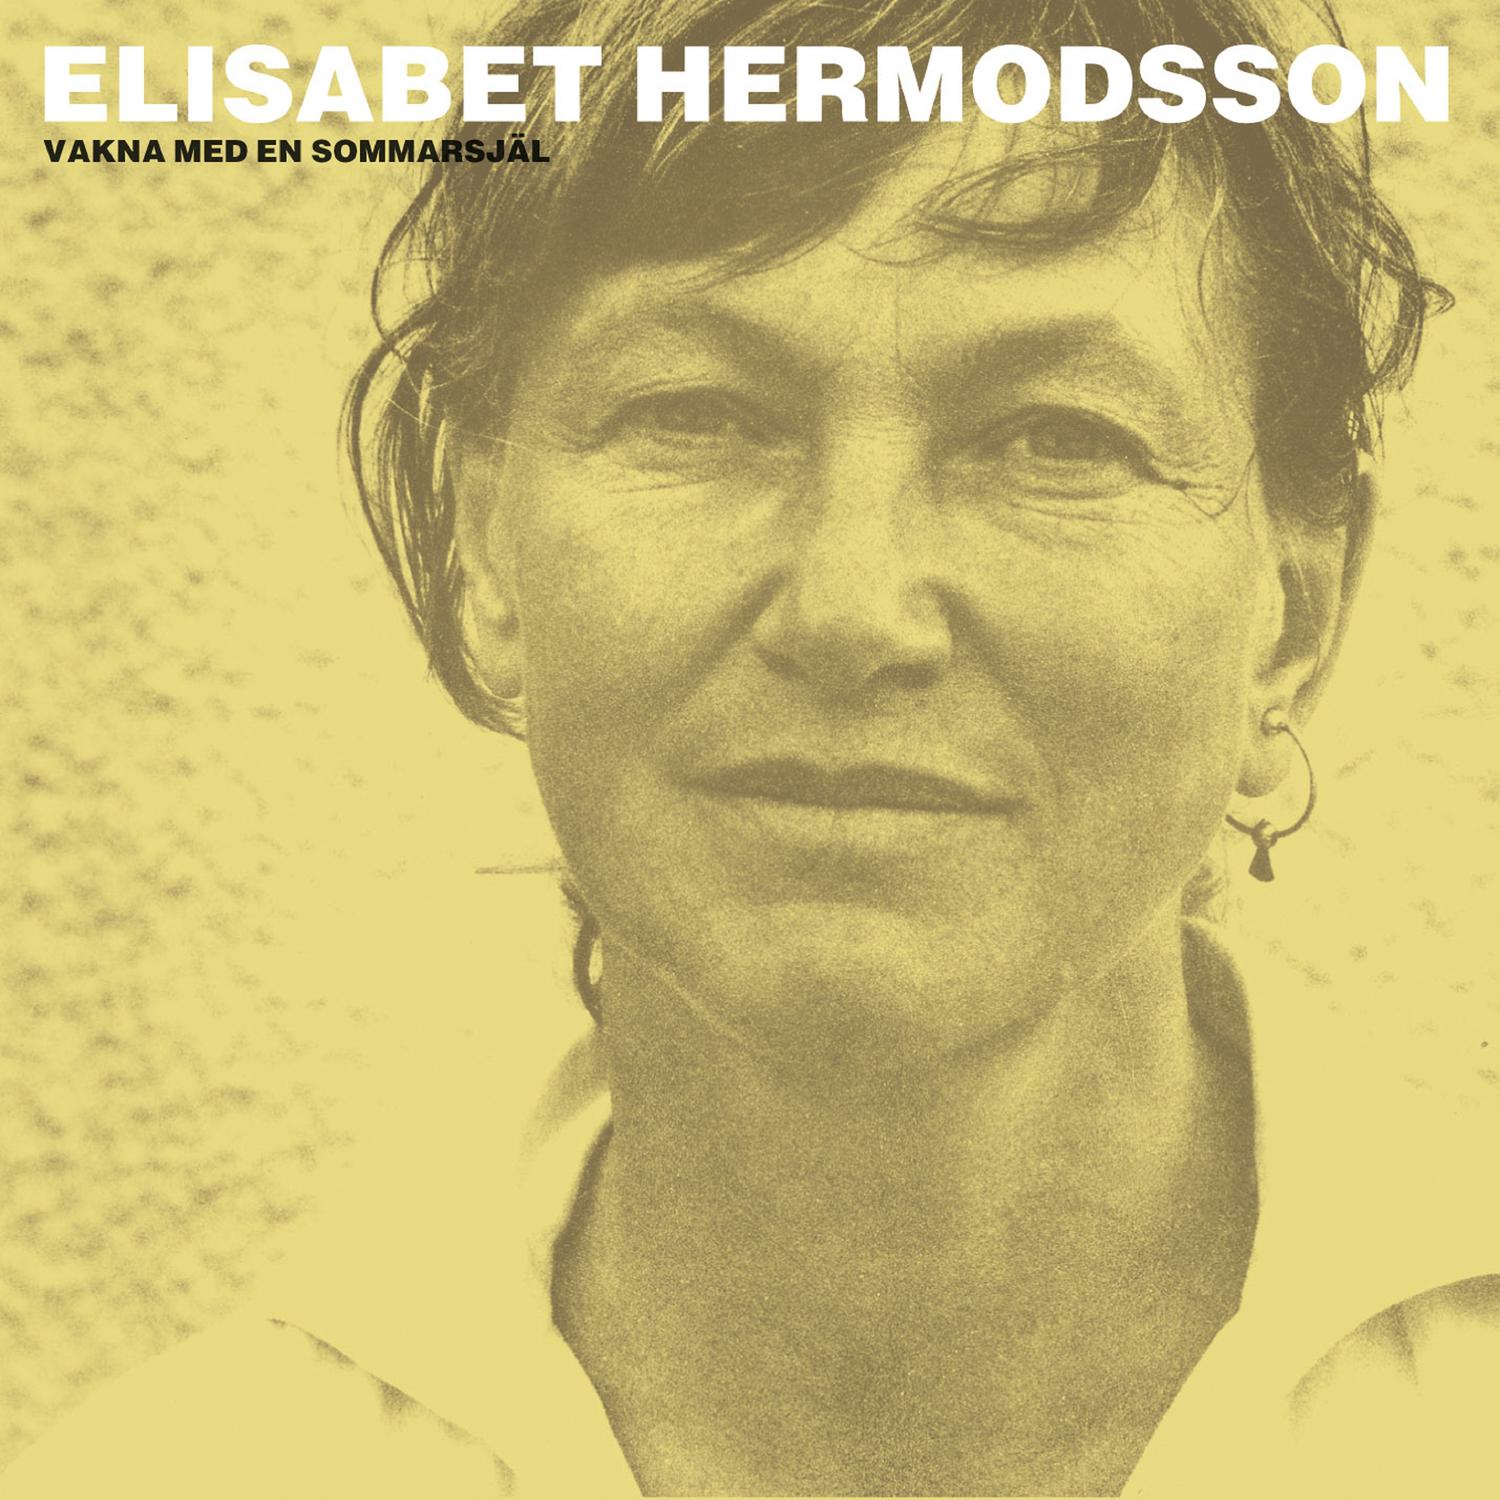 Elisabet Hermodsson - Samtal på heden